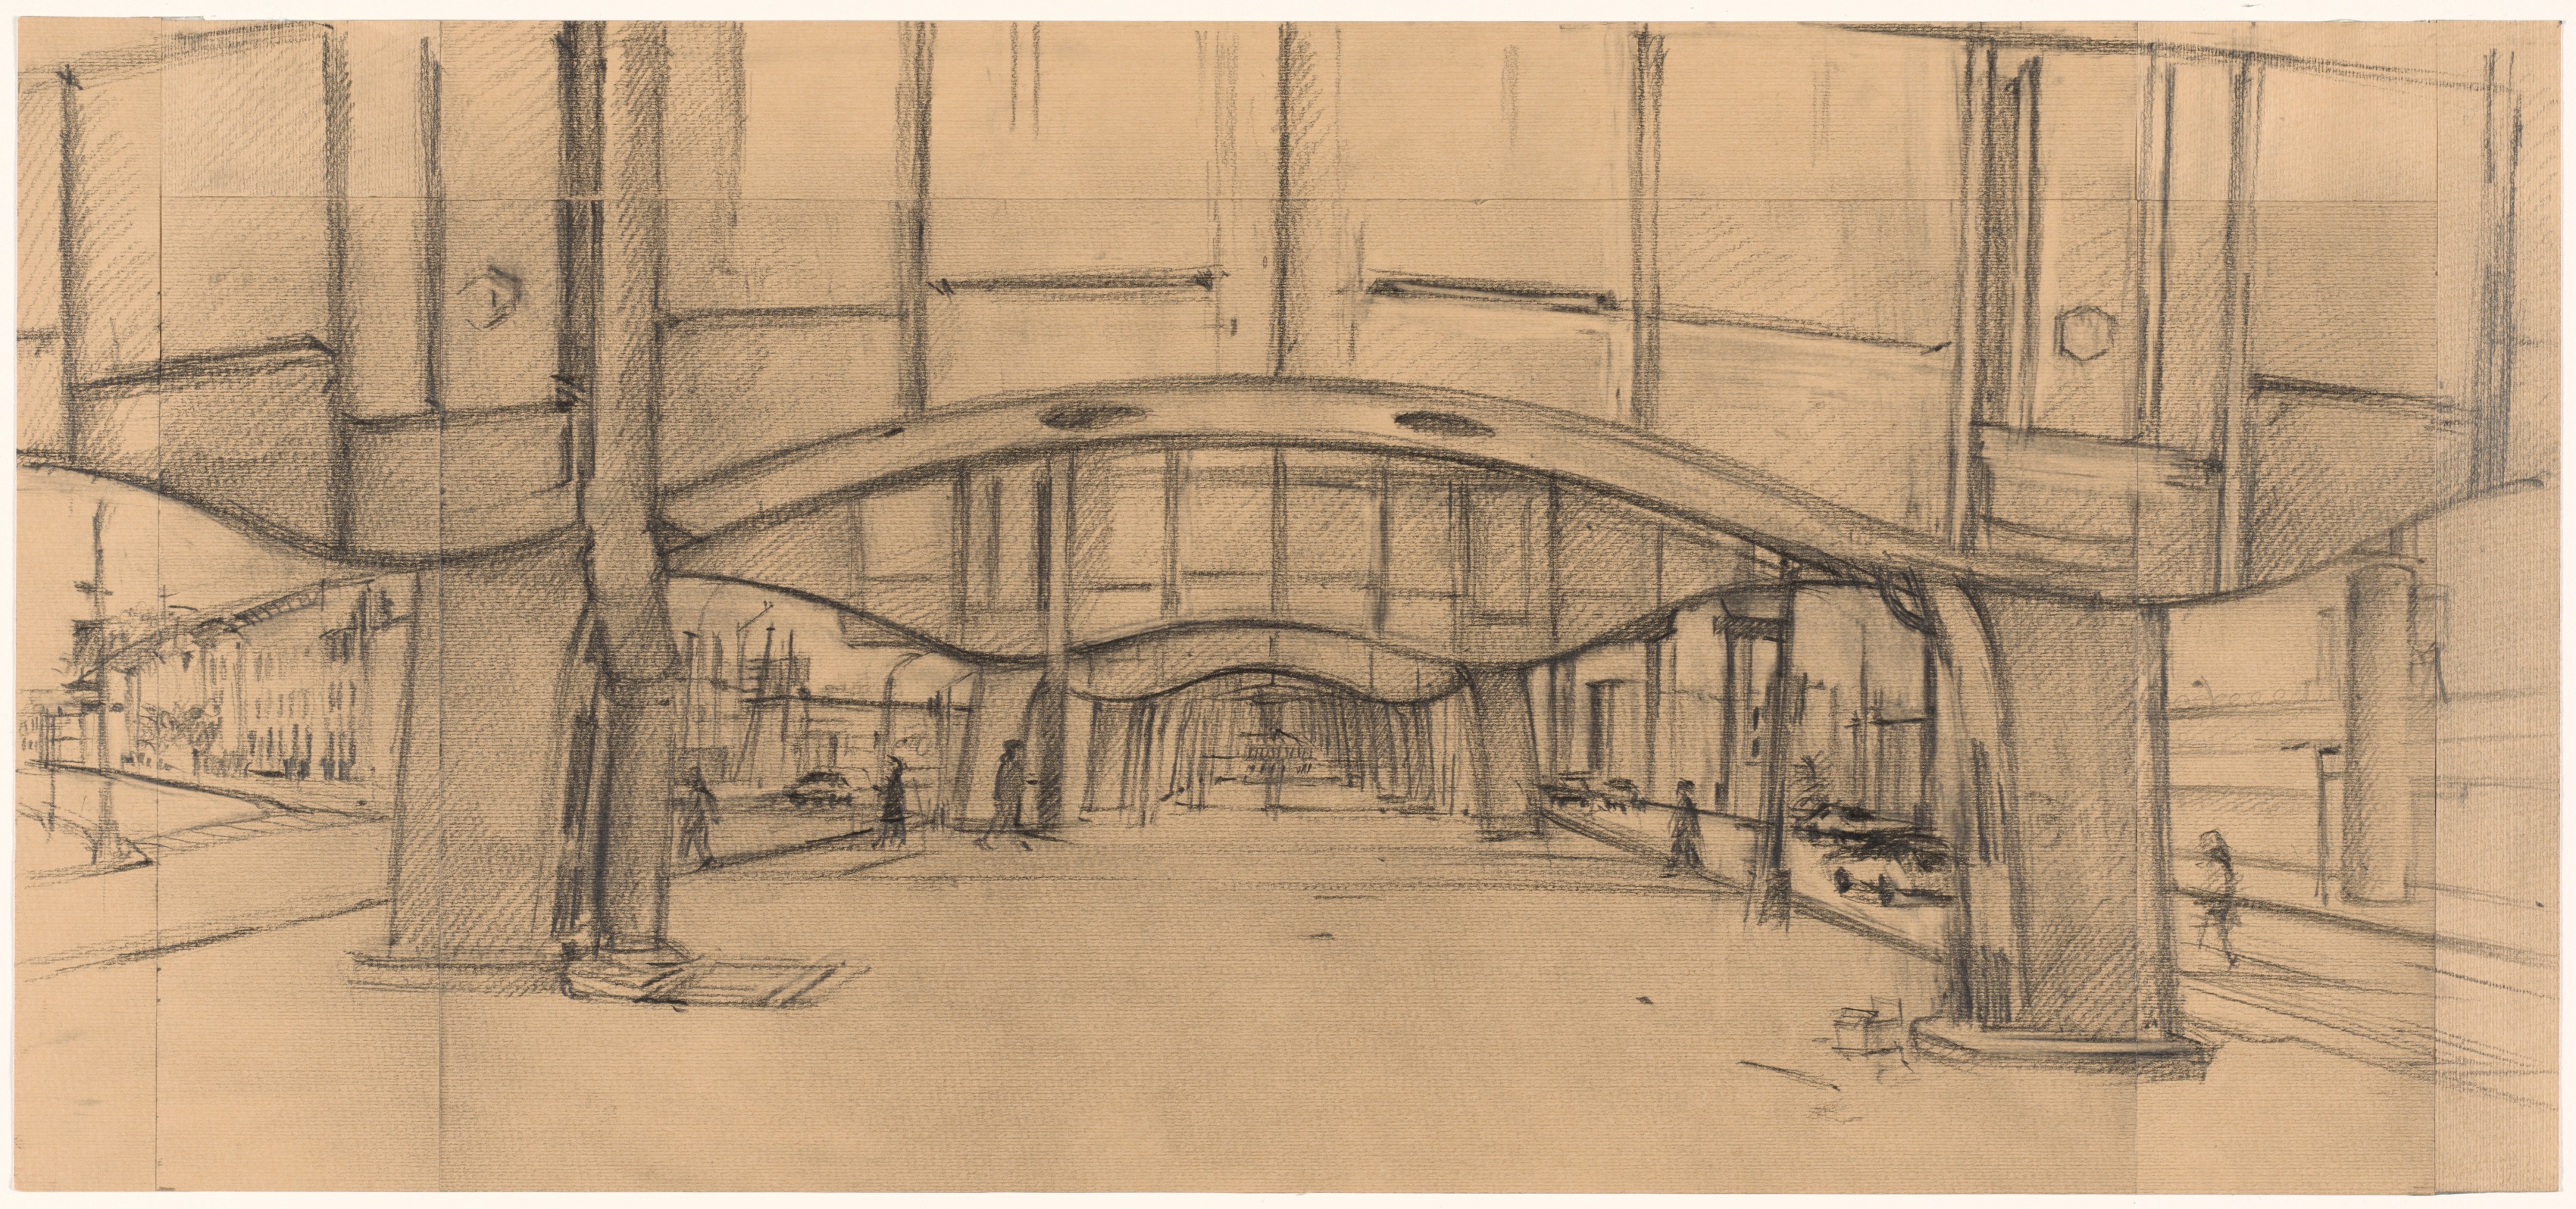 Under the Gowanus, Sketch for Part 4 (8 Pieces)